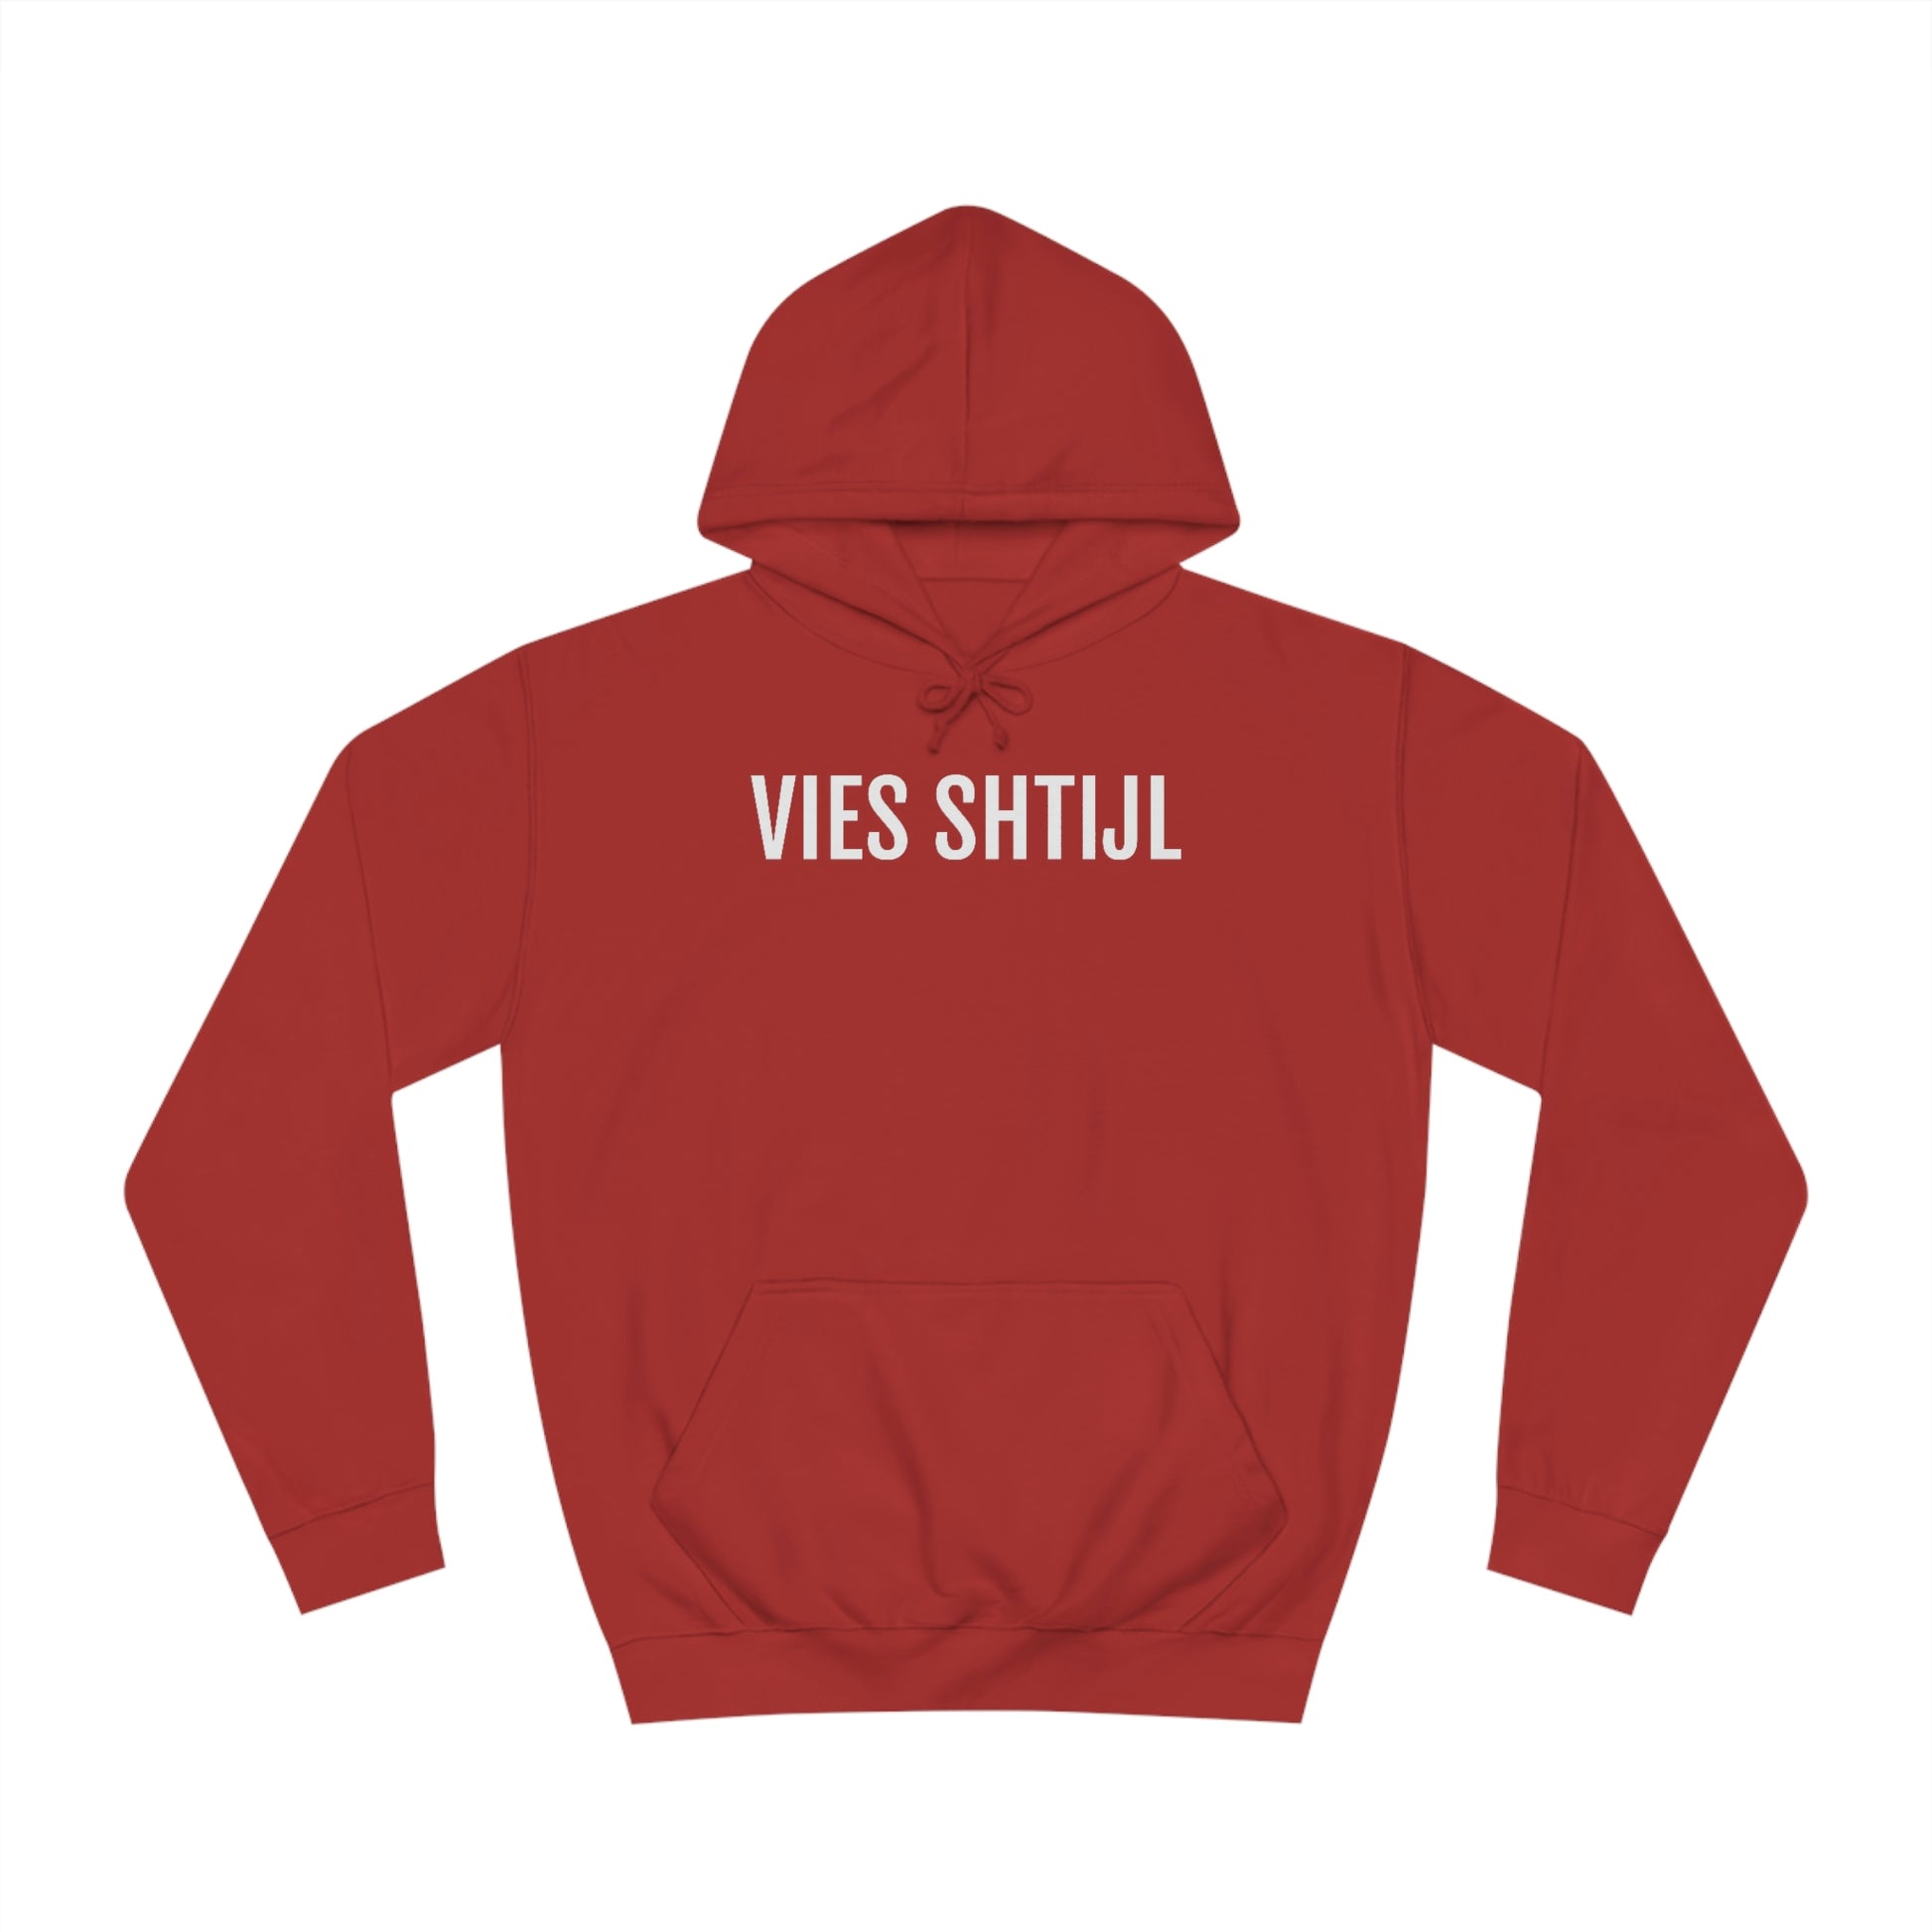 Veel stijl of in het Genks Vies Shtijl print op een rode oversize Limburgse hoodie.